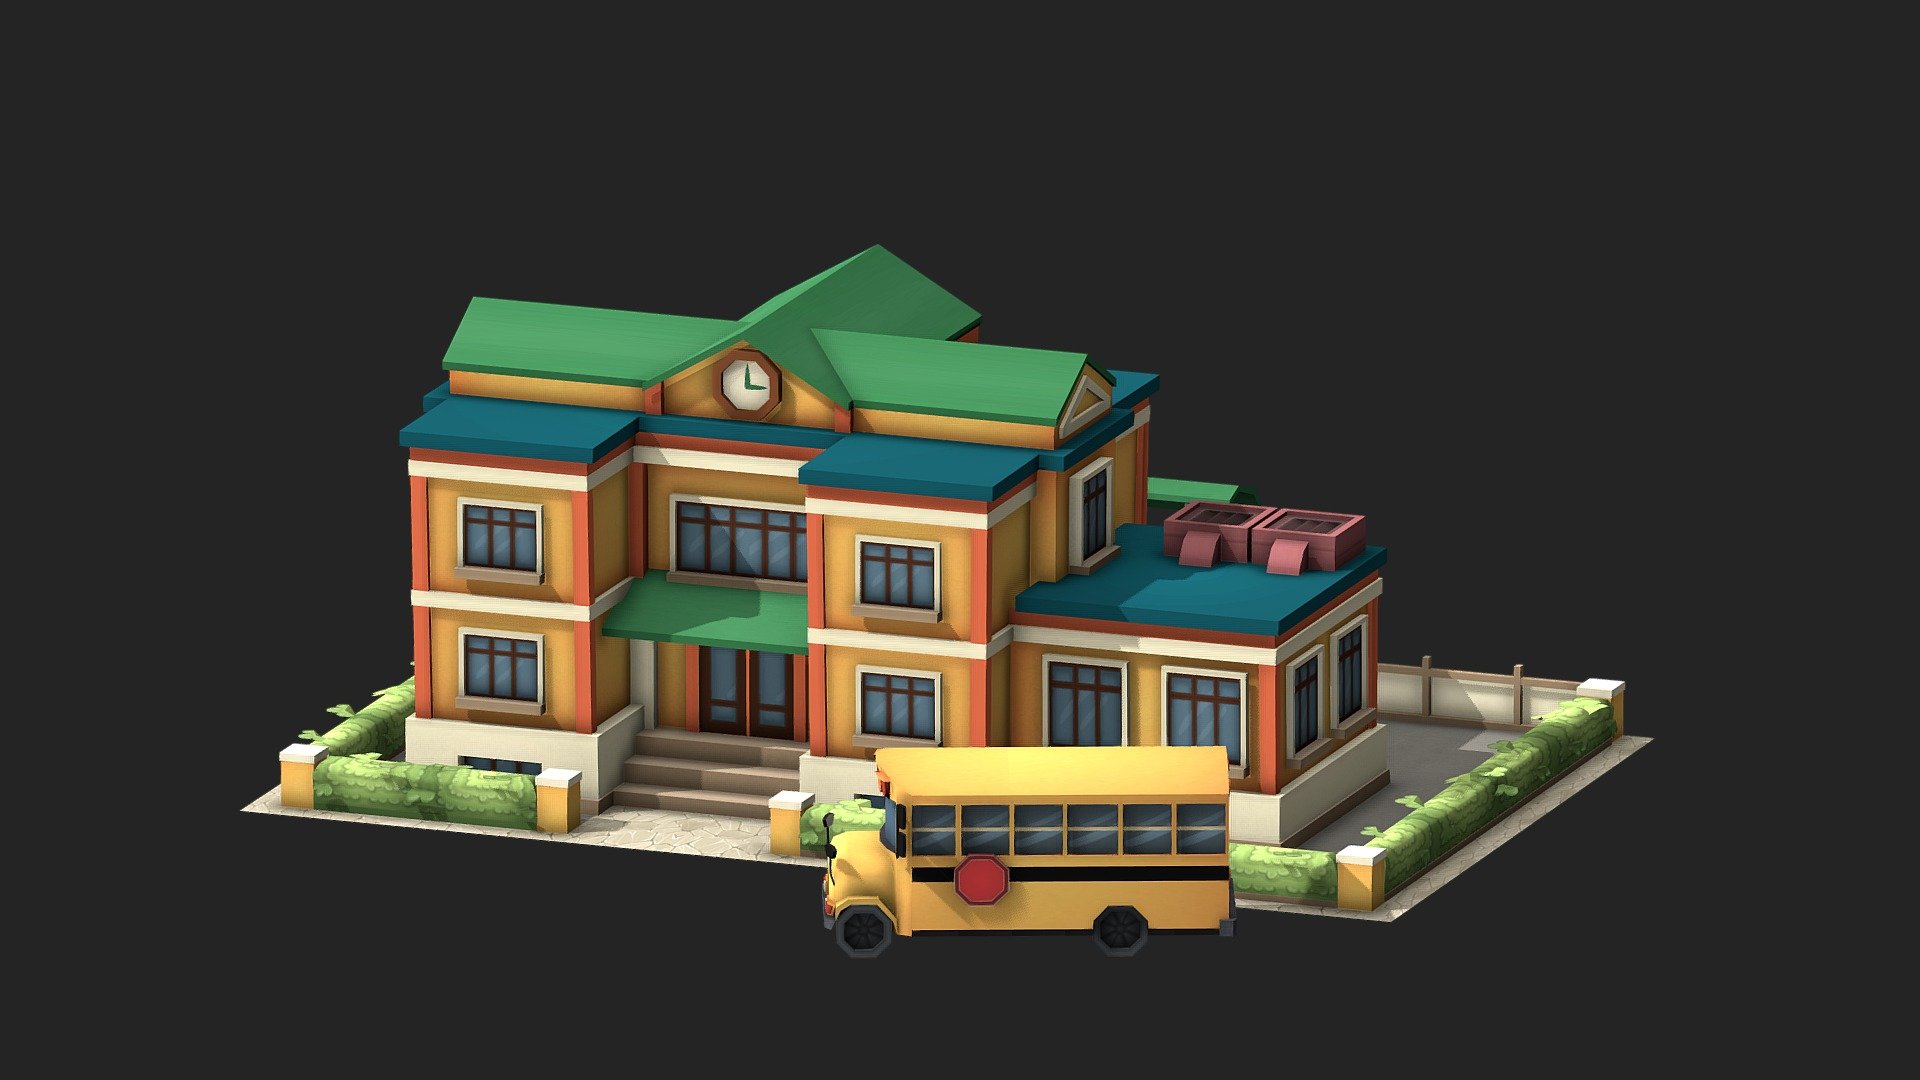 School - 3D model by zookininas 3d model